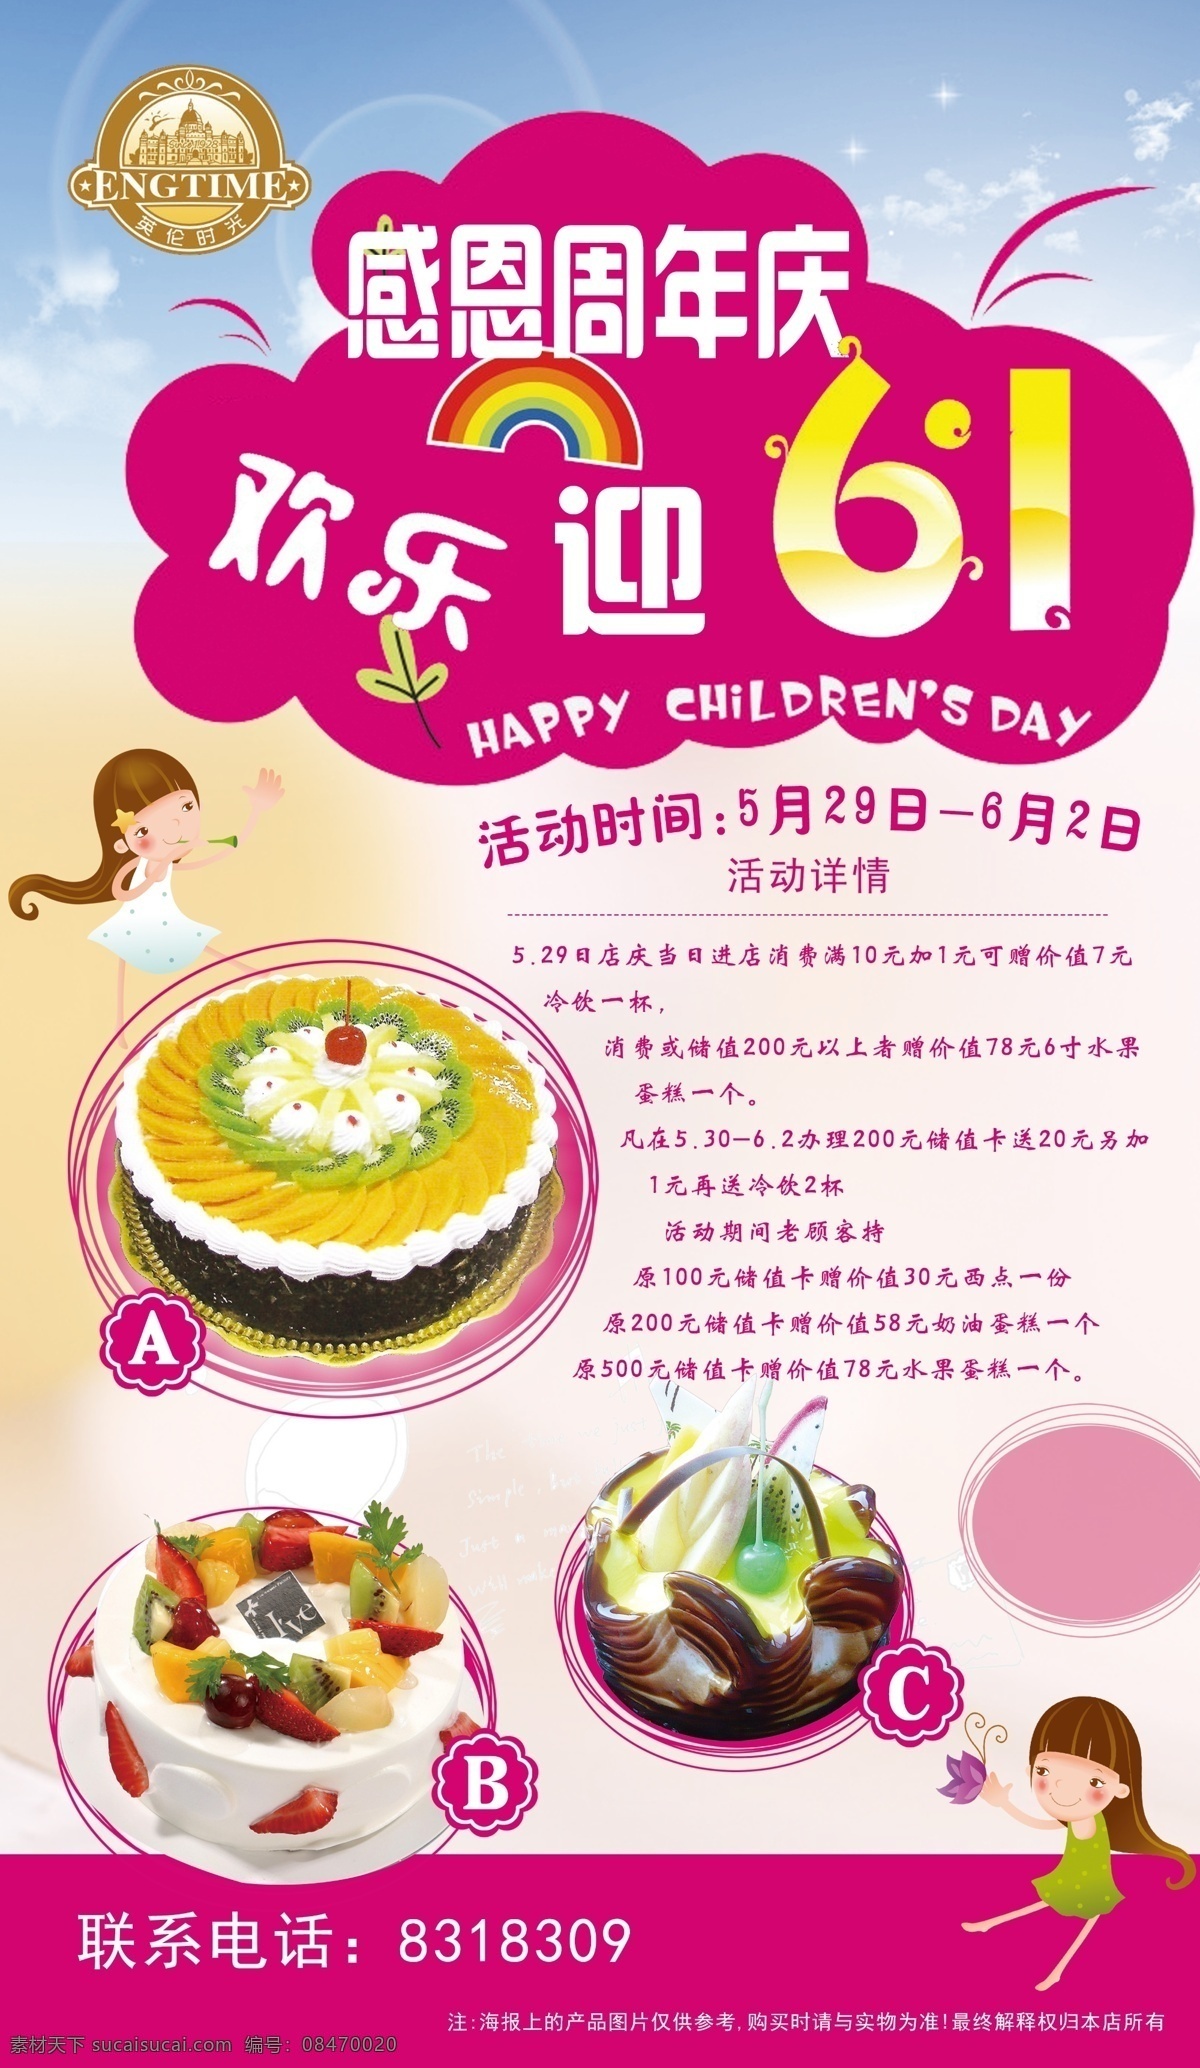 六 周年庆 六一周年庆 蛋糕 六一 活动 海报 儿童节 节日素材 紫色